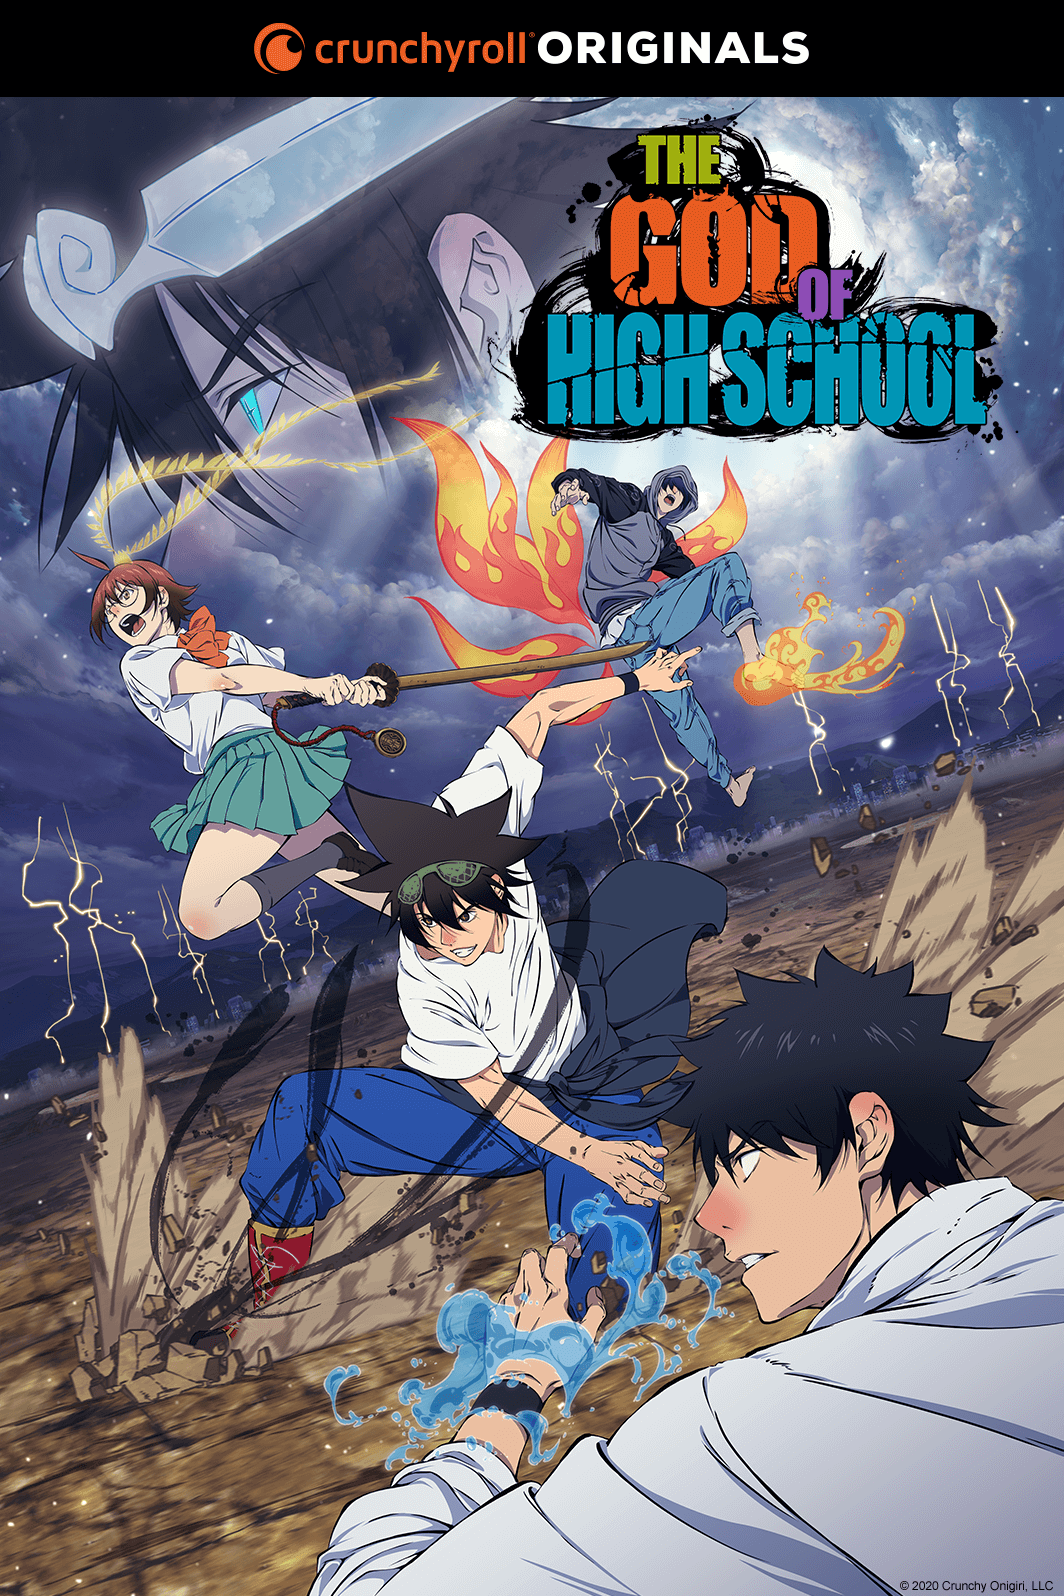 Fire Force chega dublado pela Funimation em outubro - AnimeNew